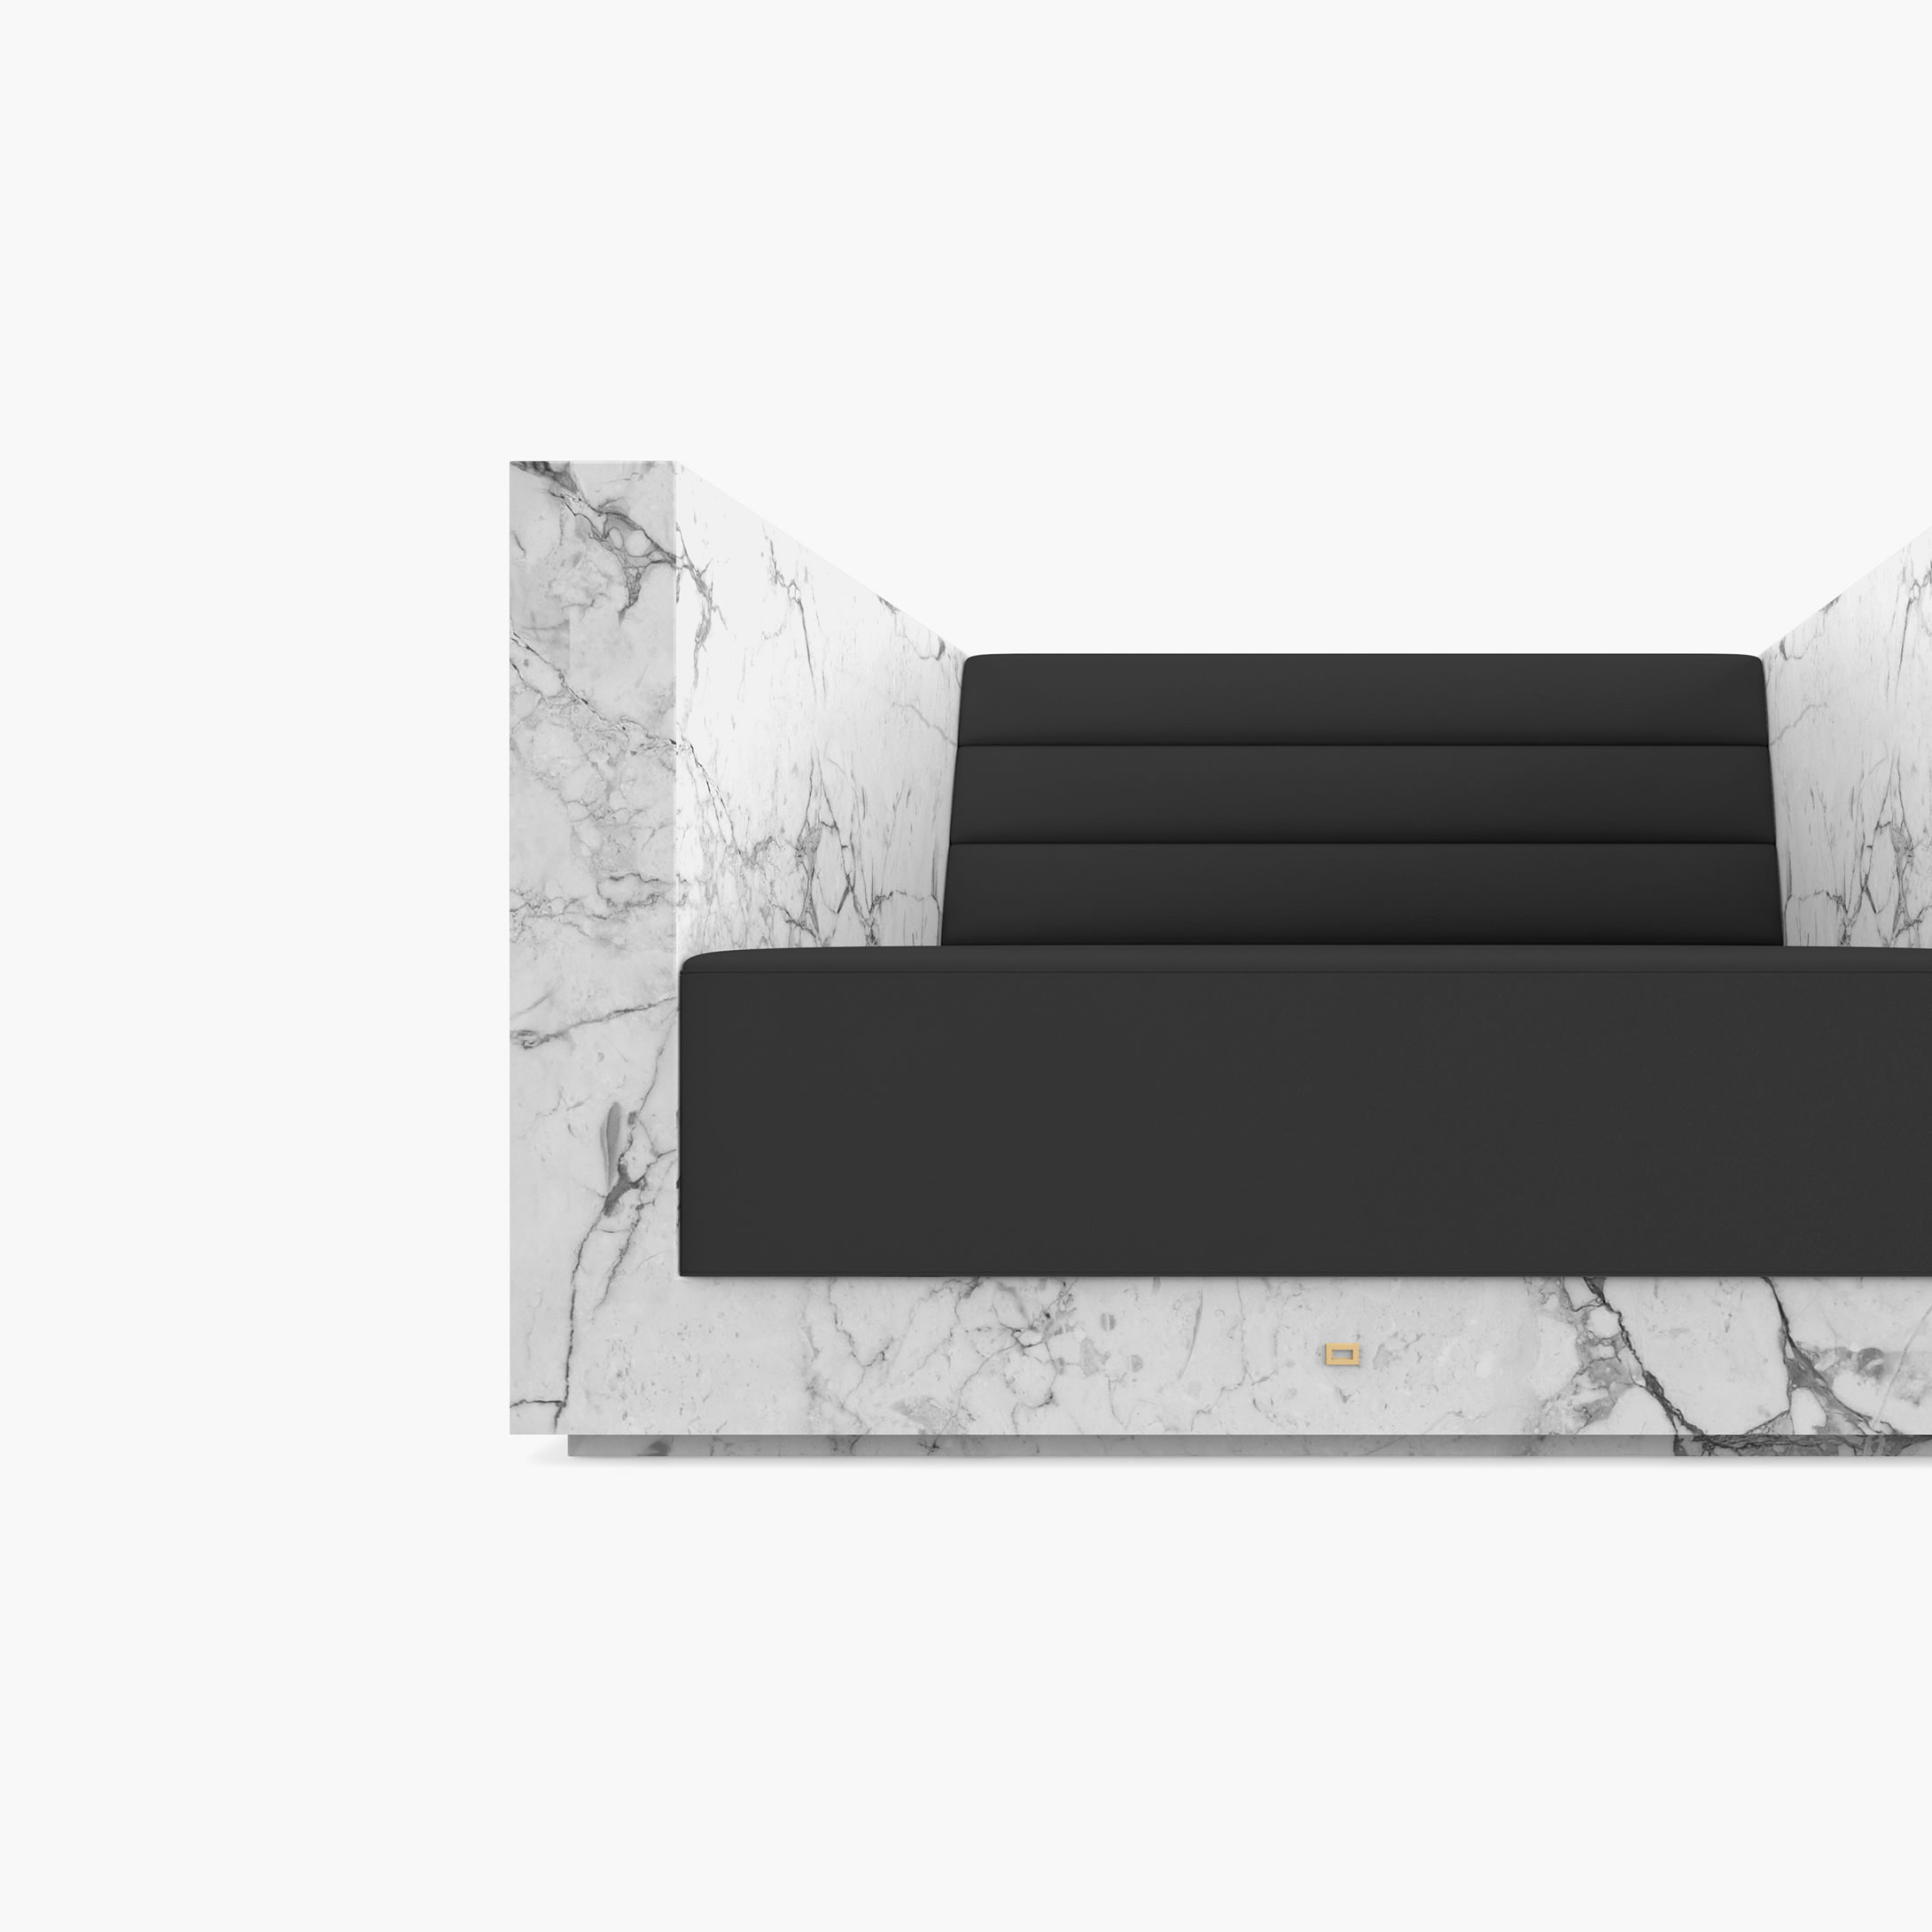 Sessel mit Armlehnen Weiss Arabescato Marmor exklusiv Wohnzimmer Design Sessel FS 403 FELIX SCHWAKE